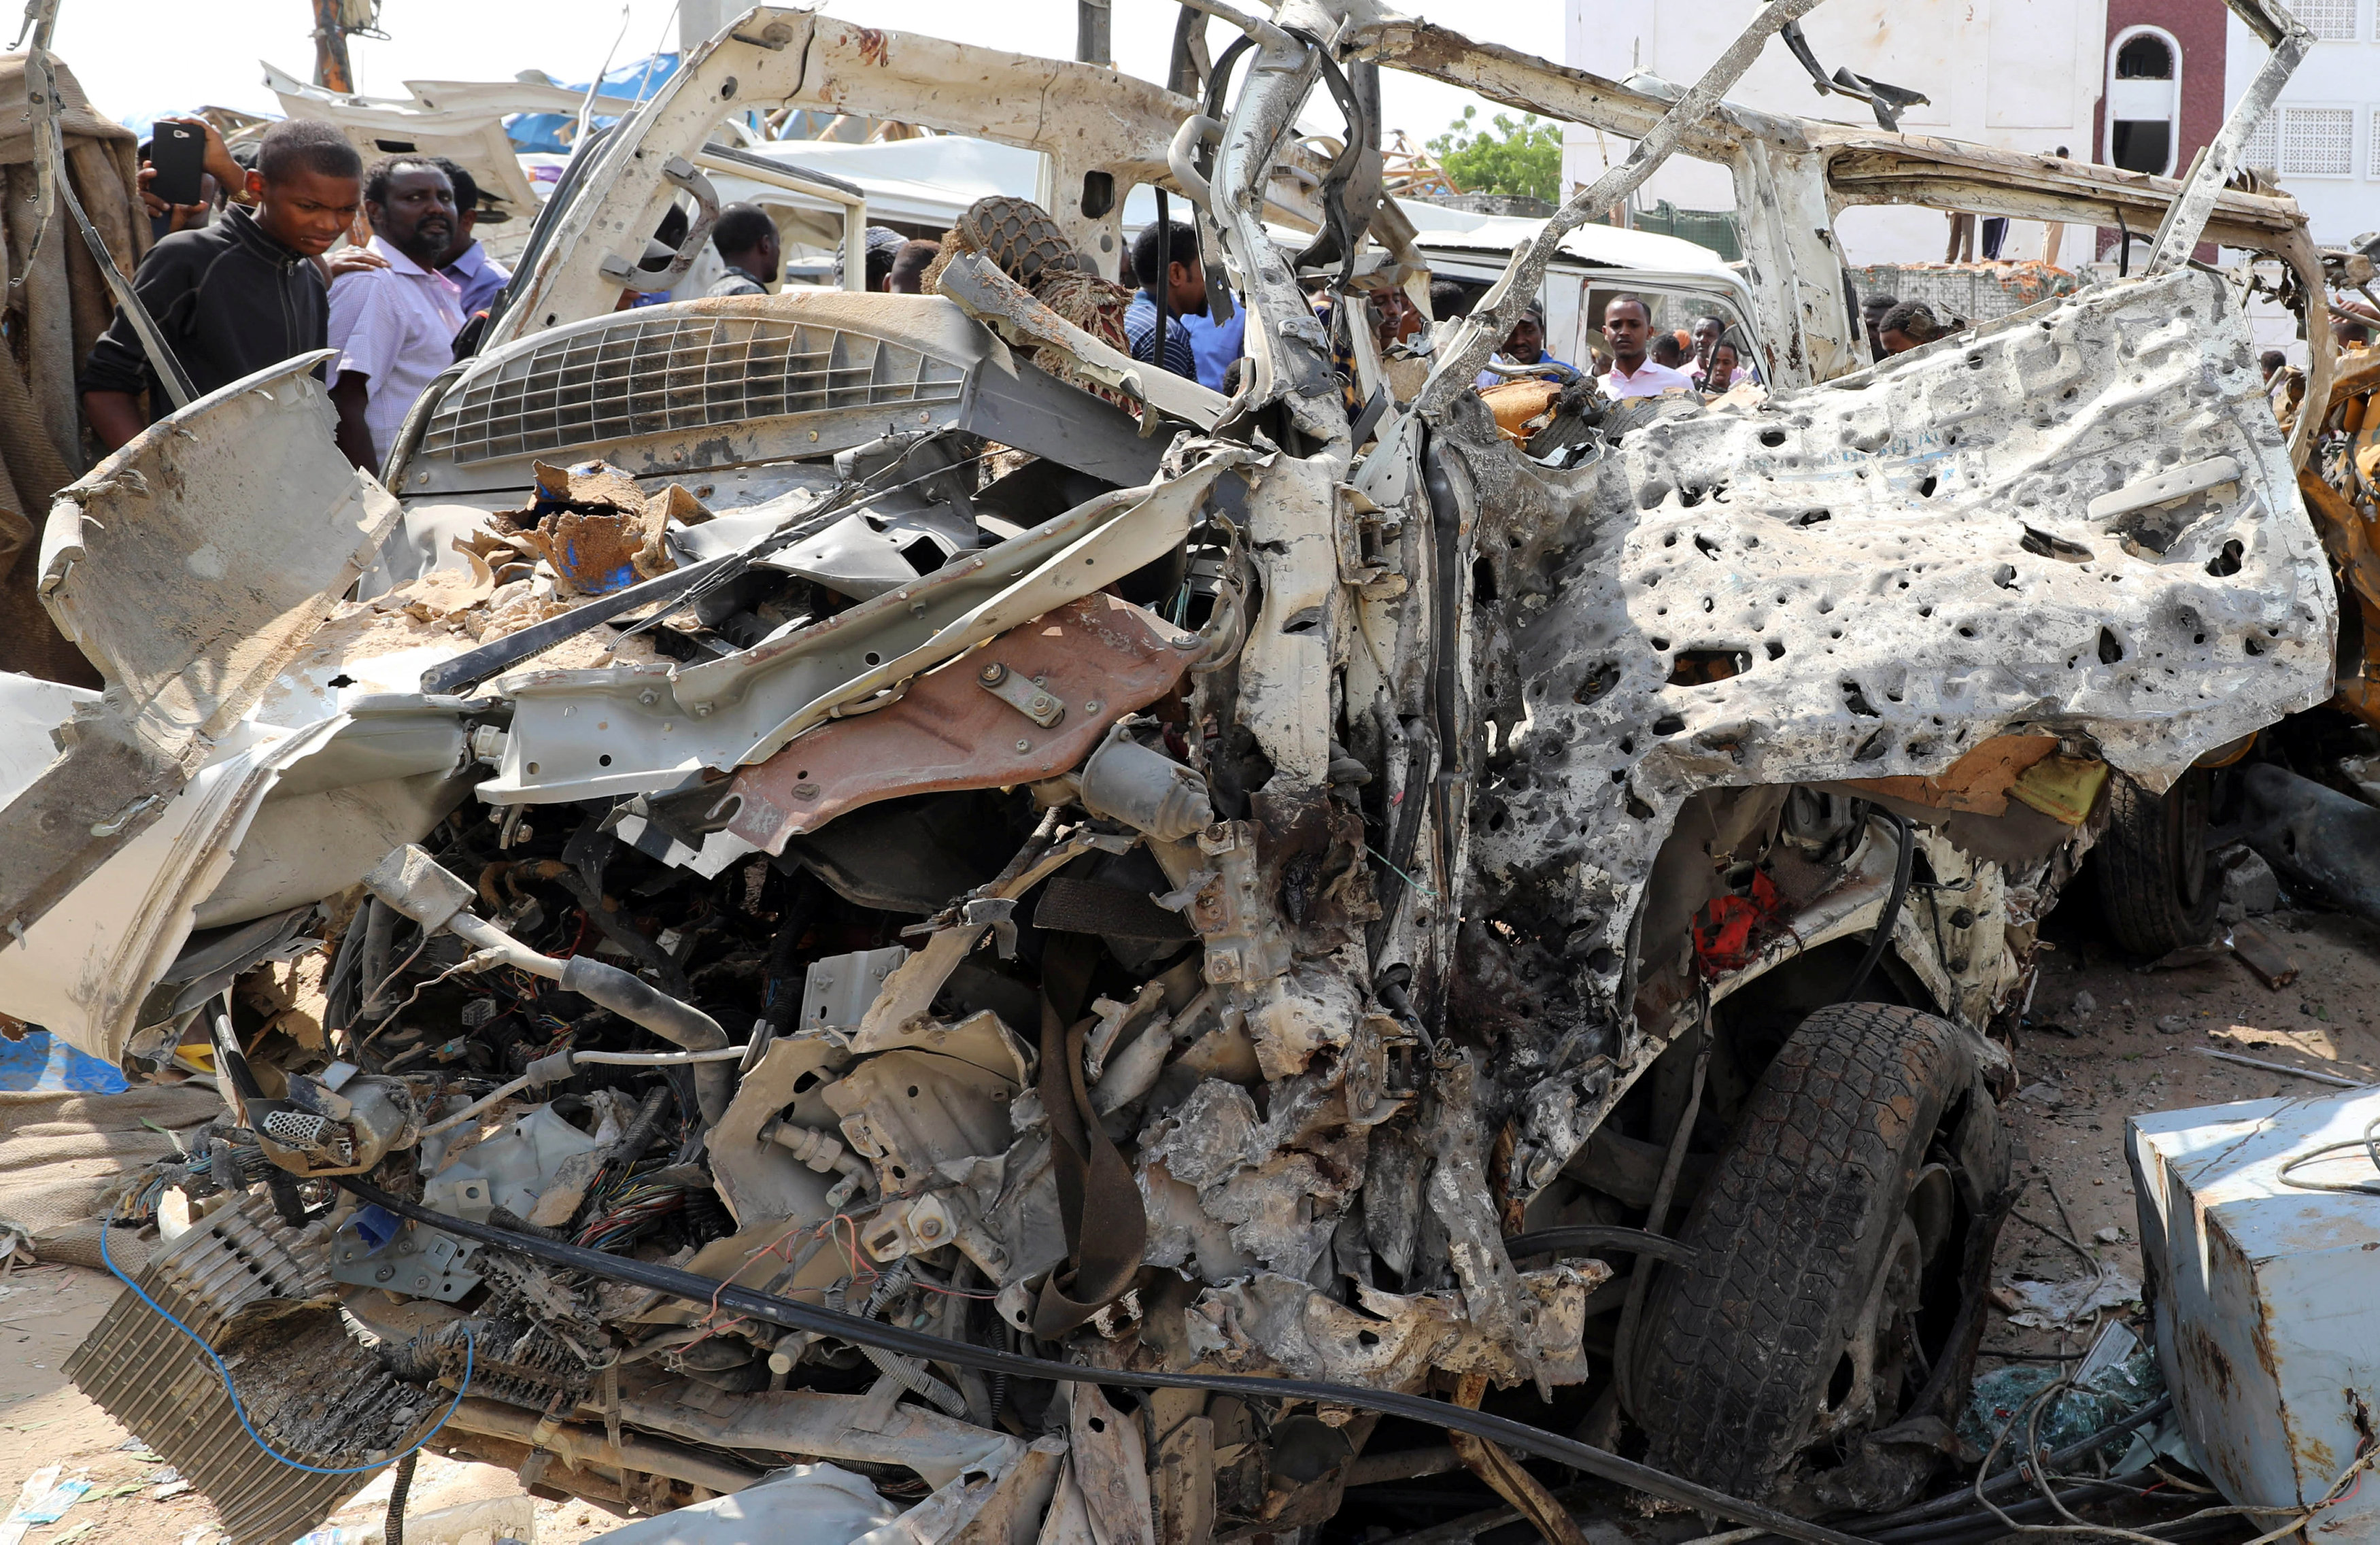 索马里首都汽车炸弹袭击死亡人数升至50人